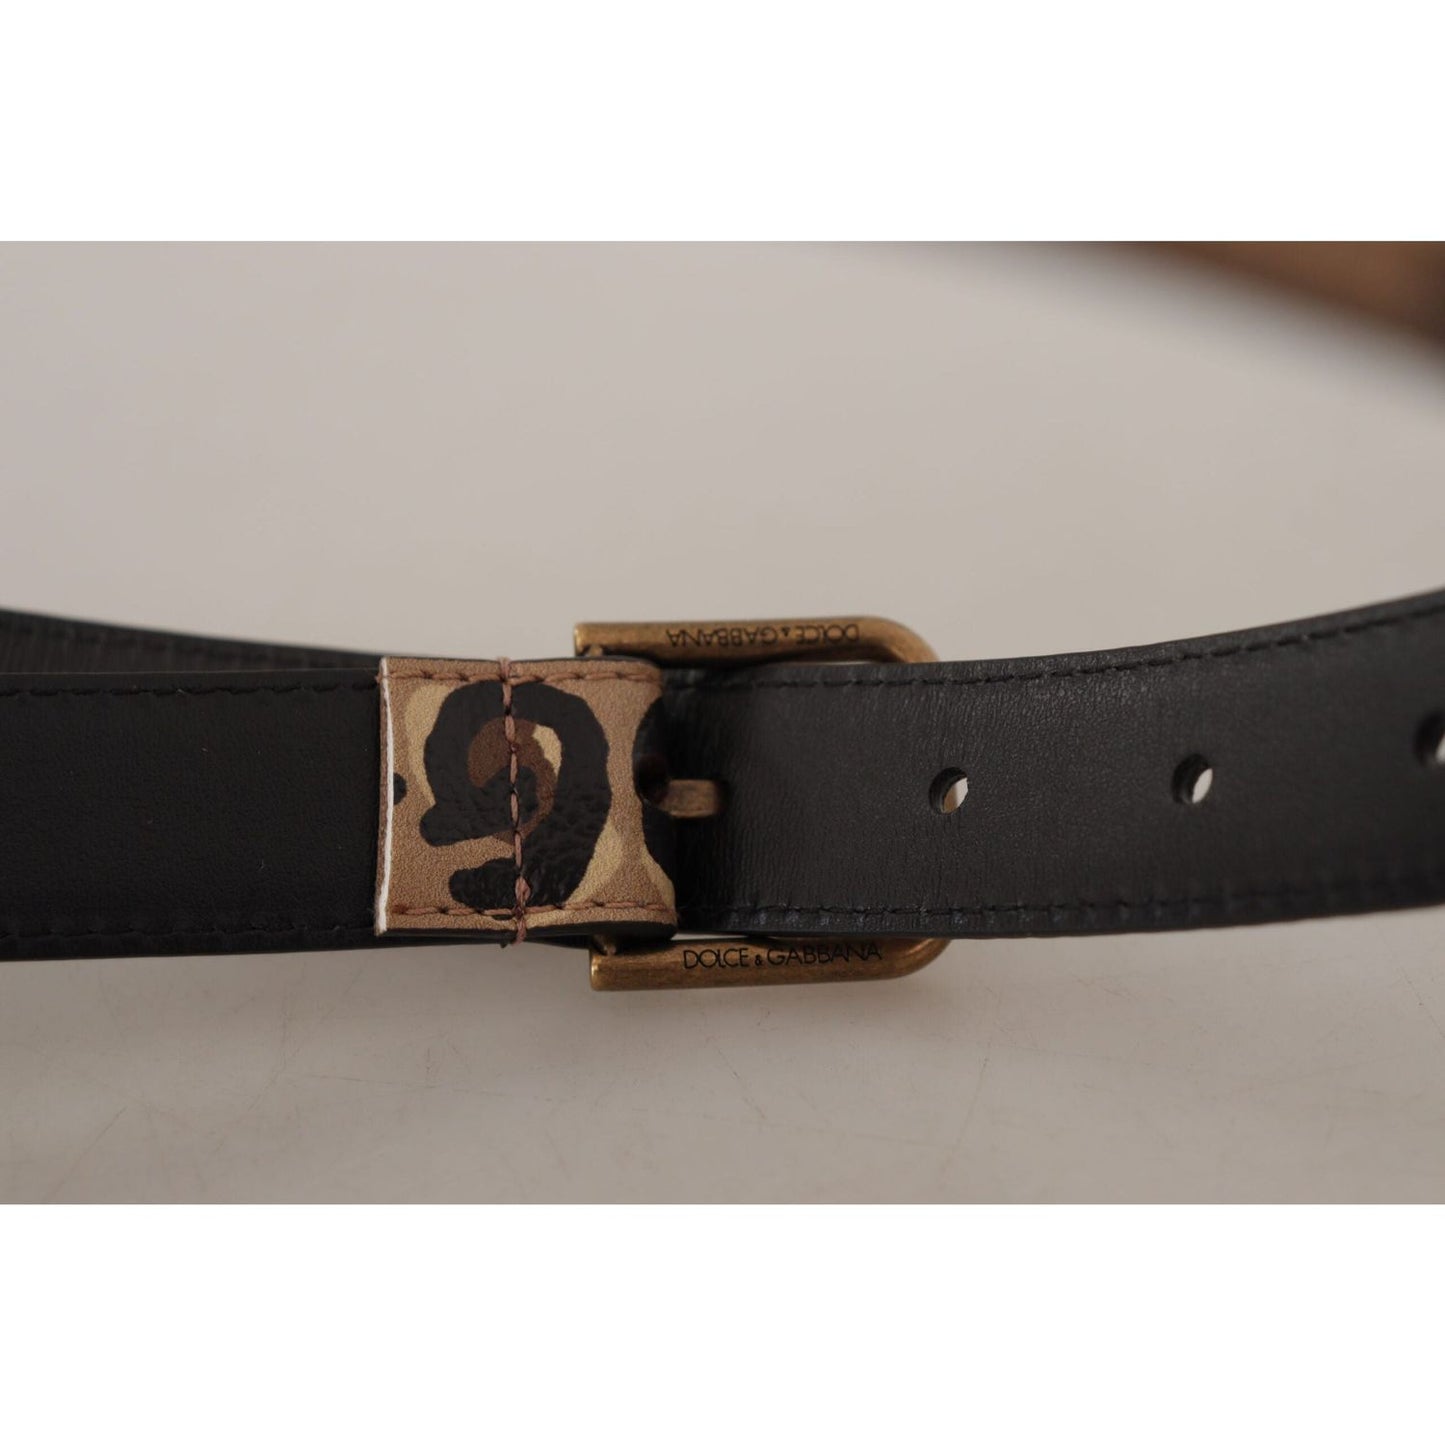 Dolce & Gabbana Elegant Leather Engraved Buckle Belt brown-leopard-print-vintage-metal-waist-buckle-belt IMG_9124-scaled-6568e102-739.jpg